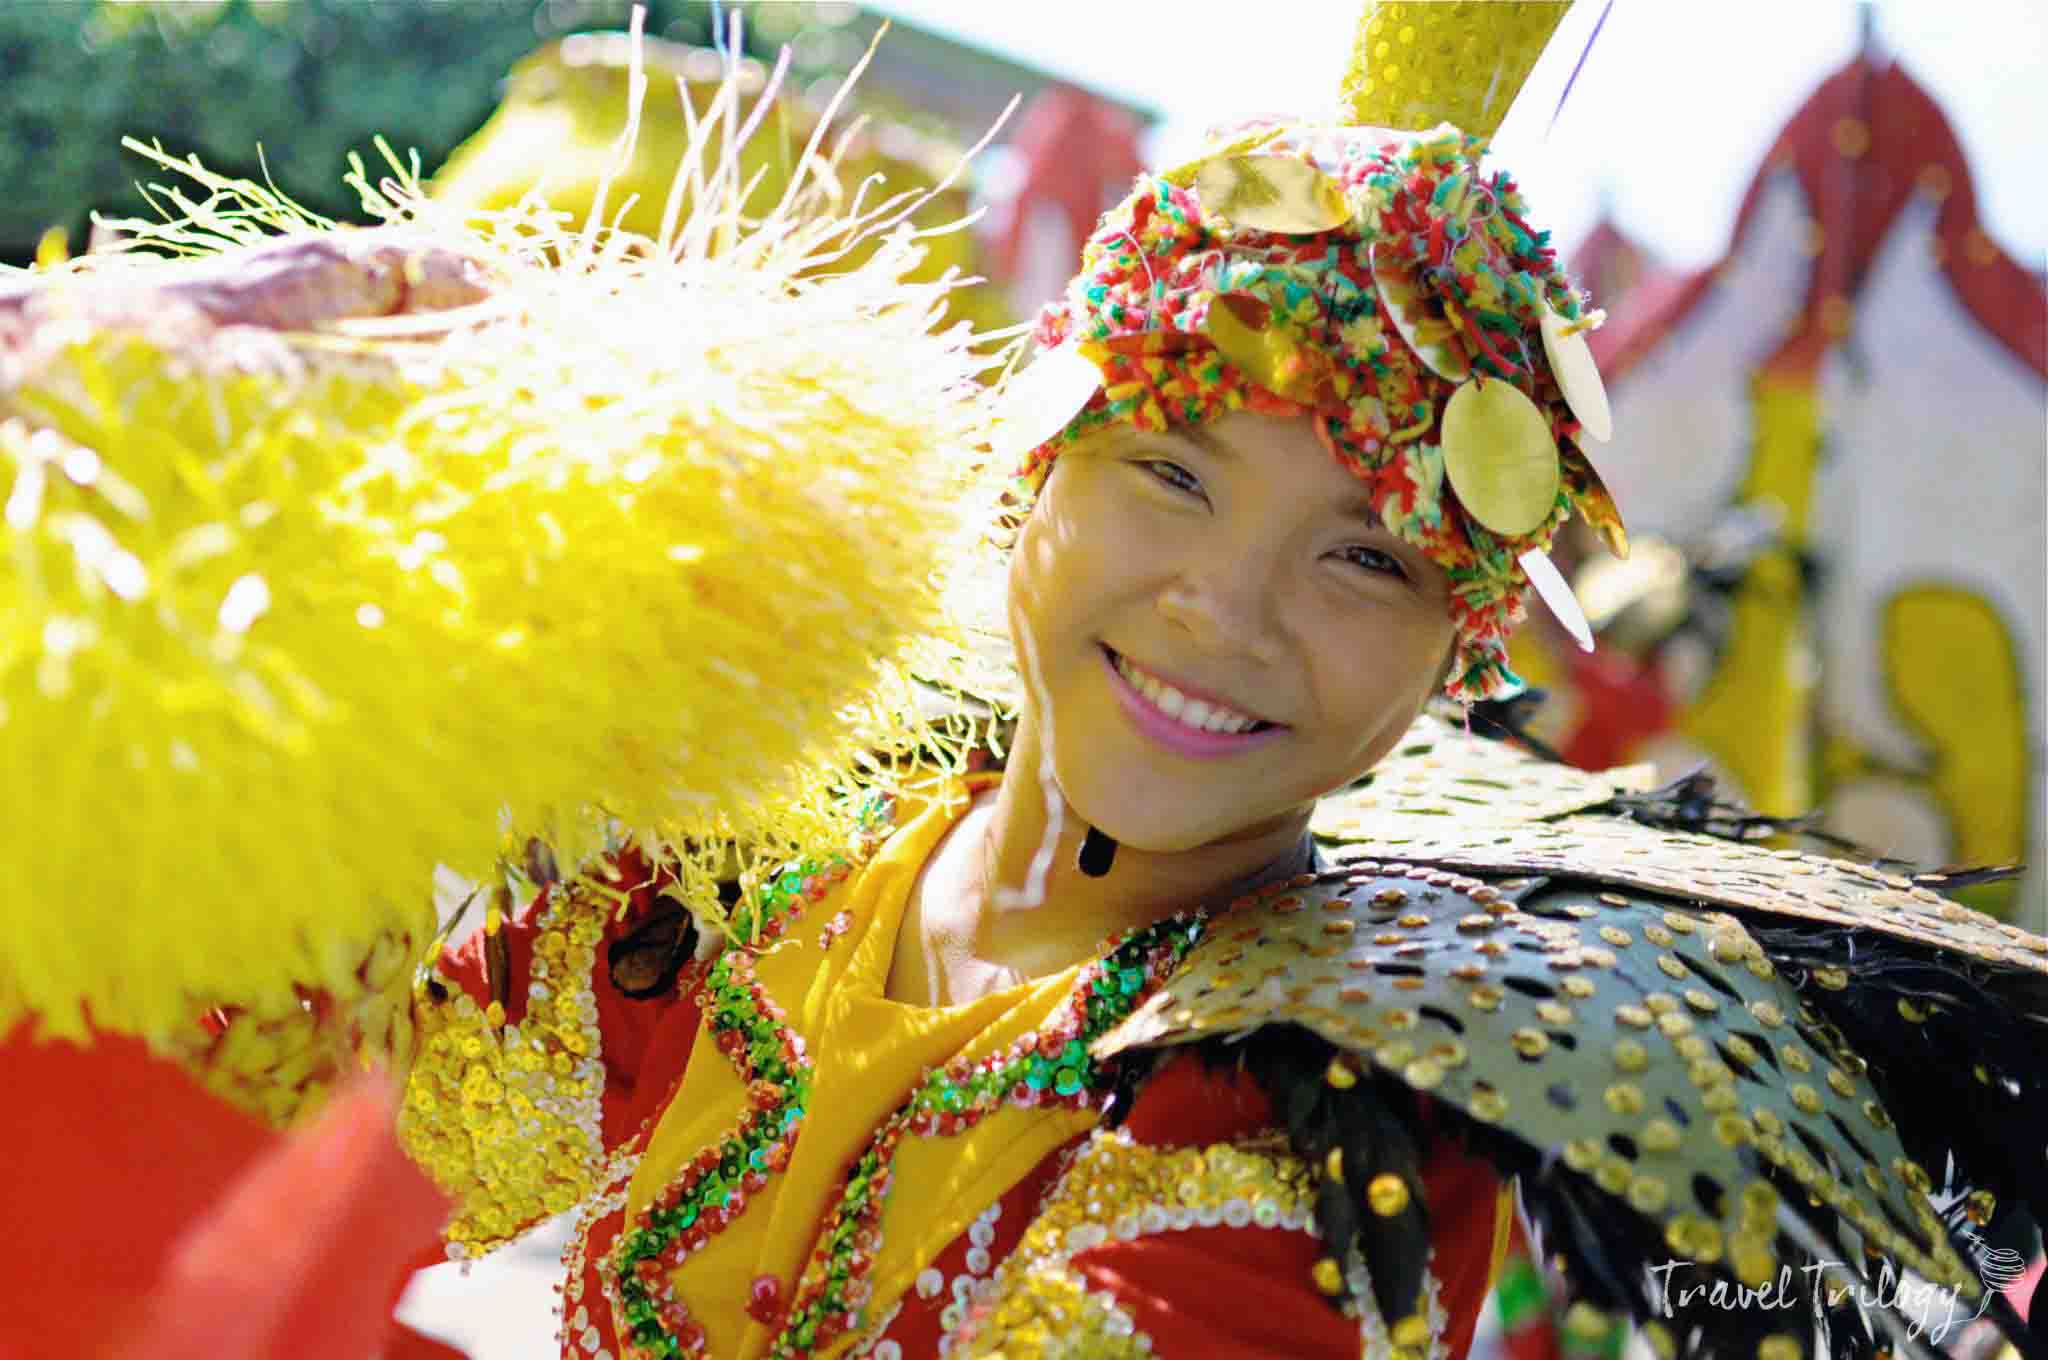 kadayawan festival